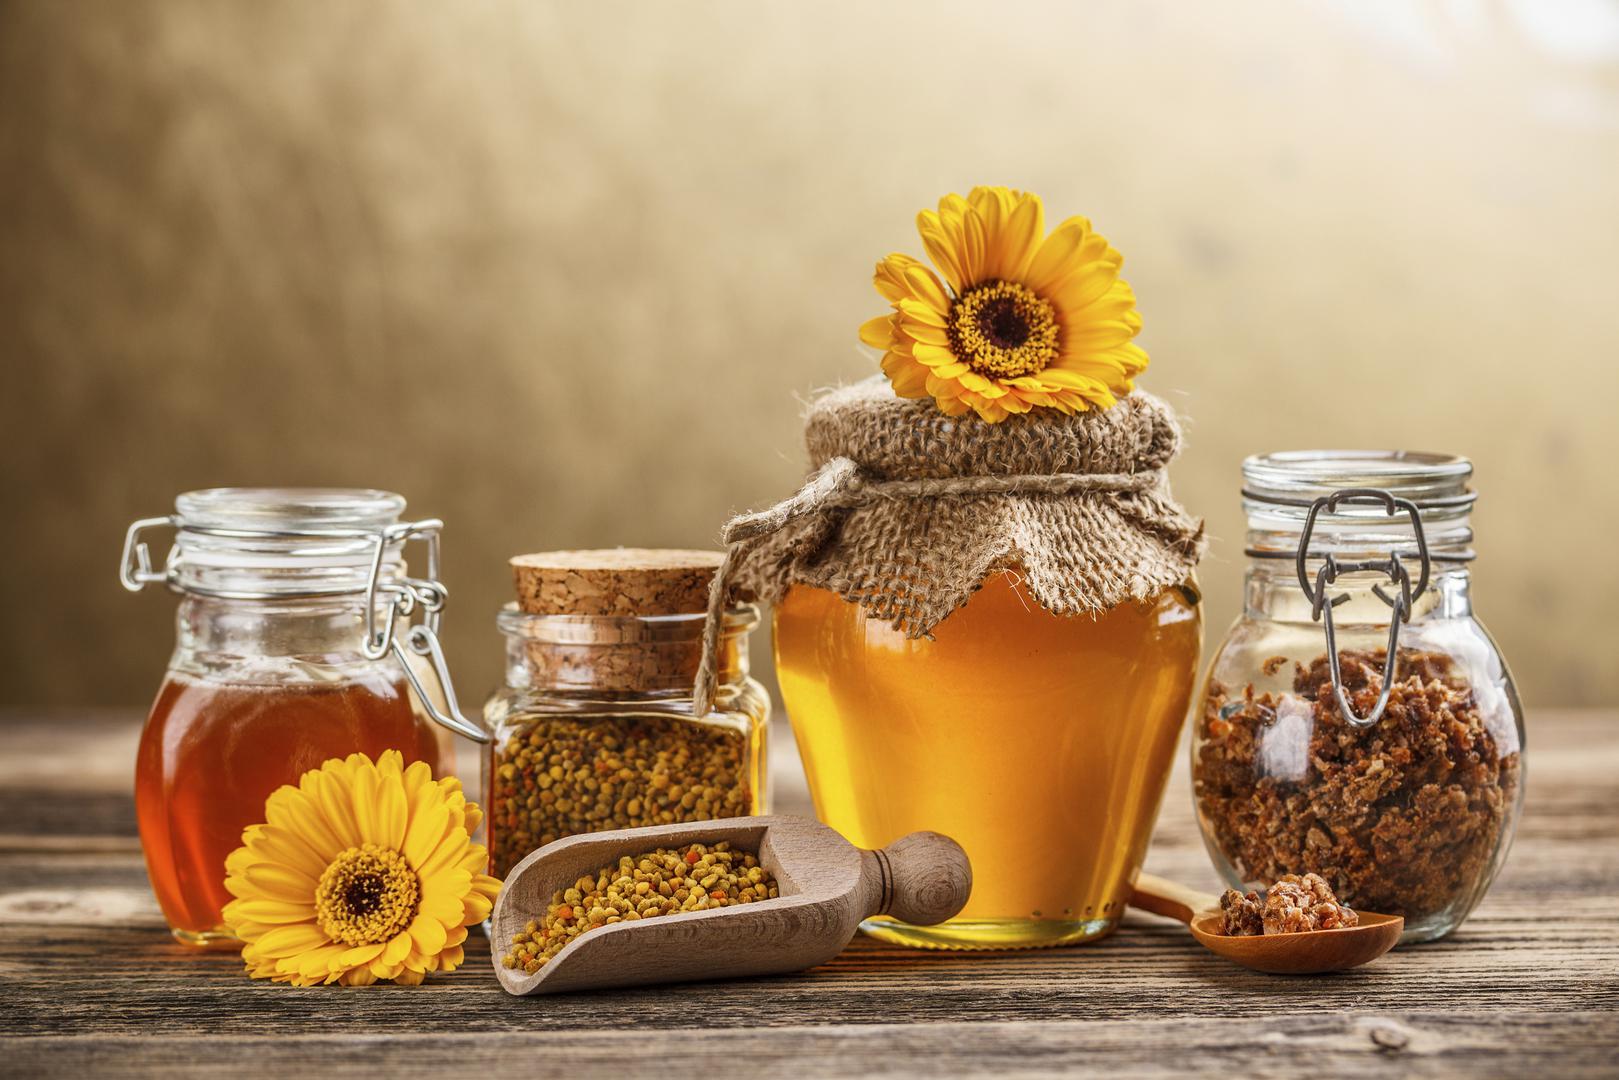 Redovito konzumiranje meda i cimeta može osnažiti vaš imunološki sustav i zaštititi vas od bakterija i virusa. Oba sastojka su bogat izvor antioksidanata i imaju antibakterijska svojstva.